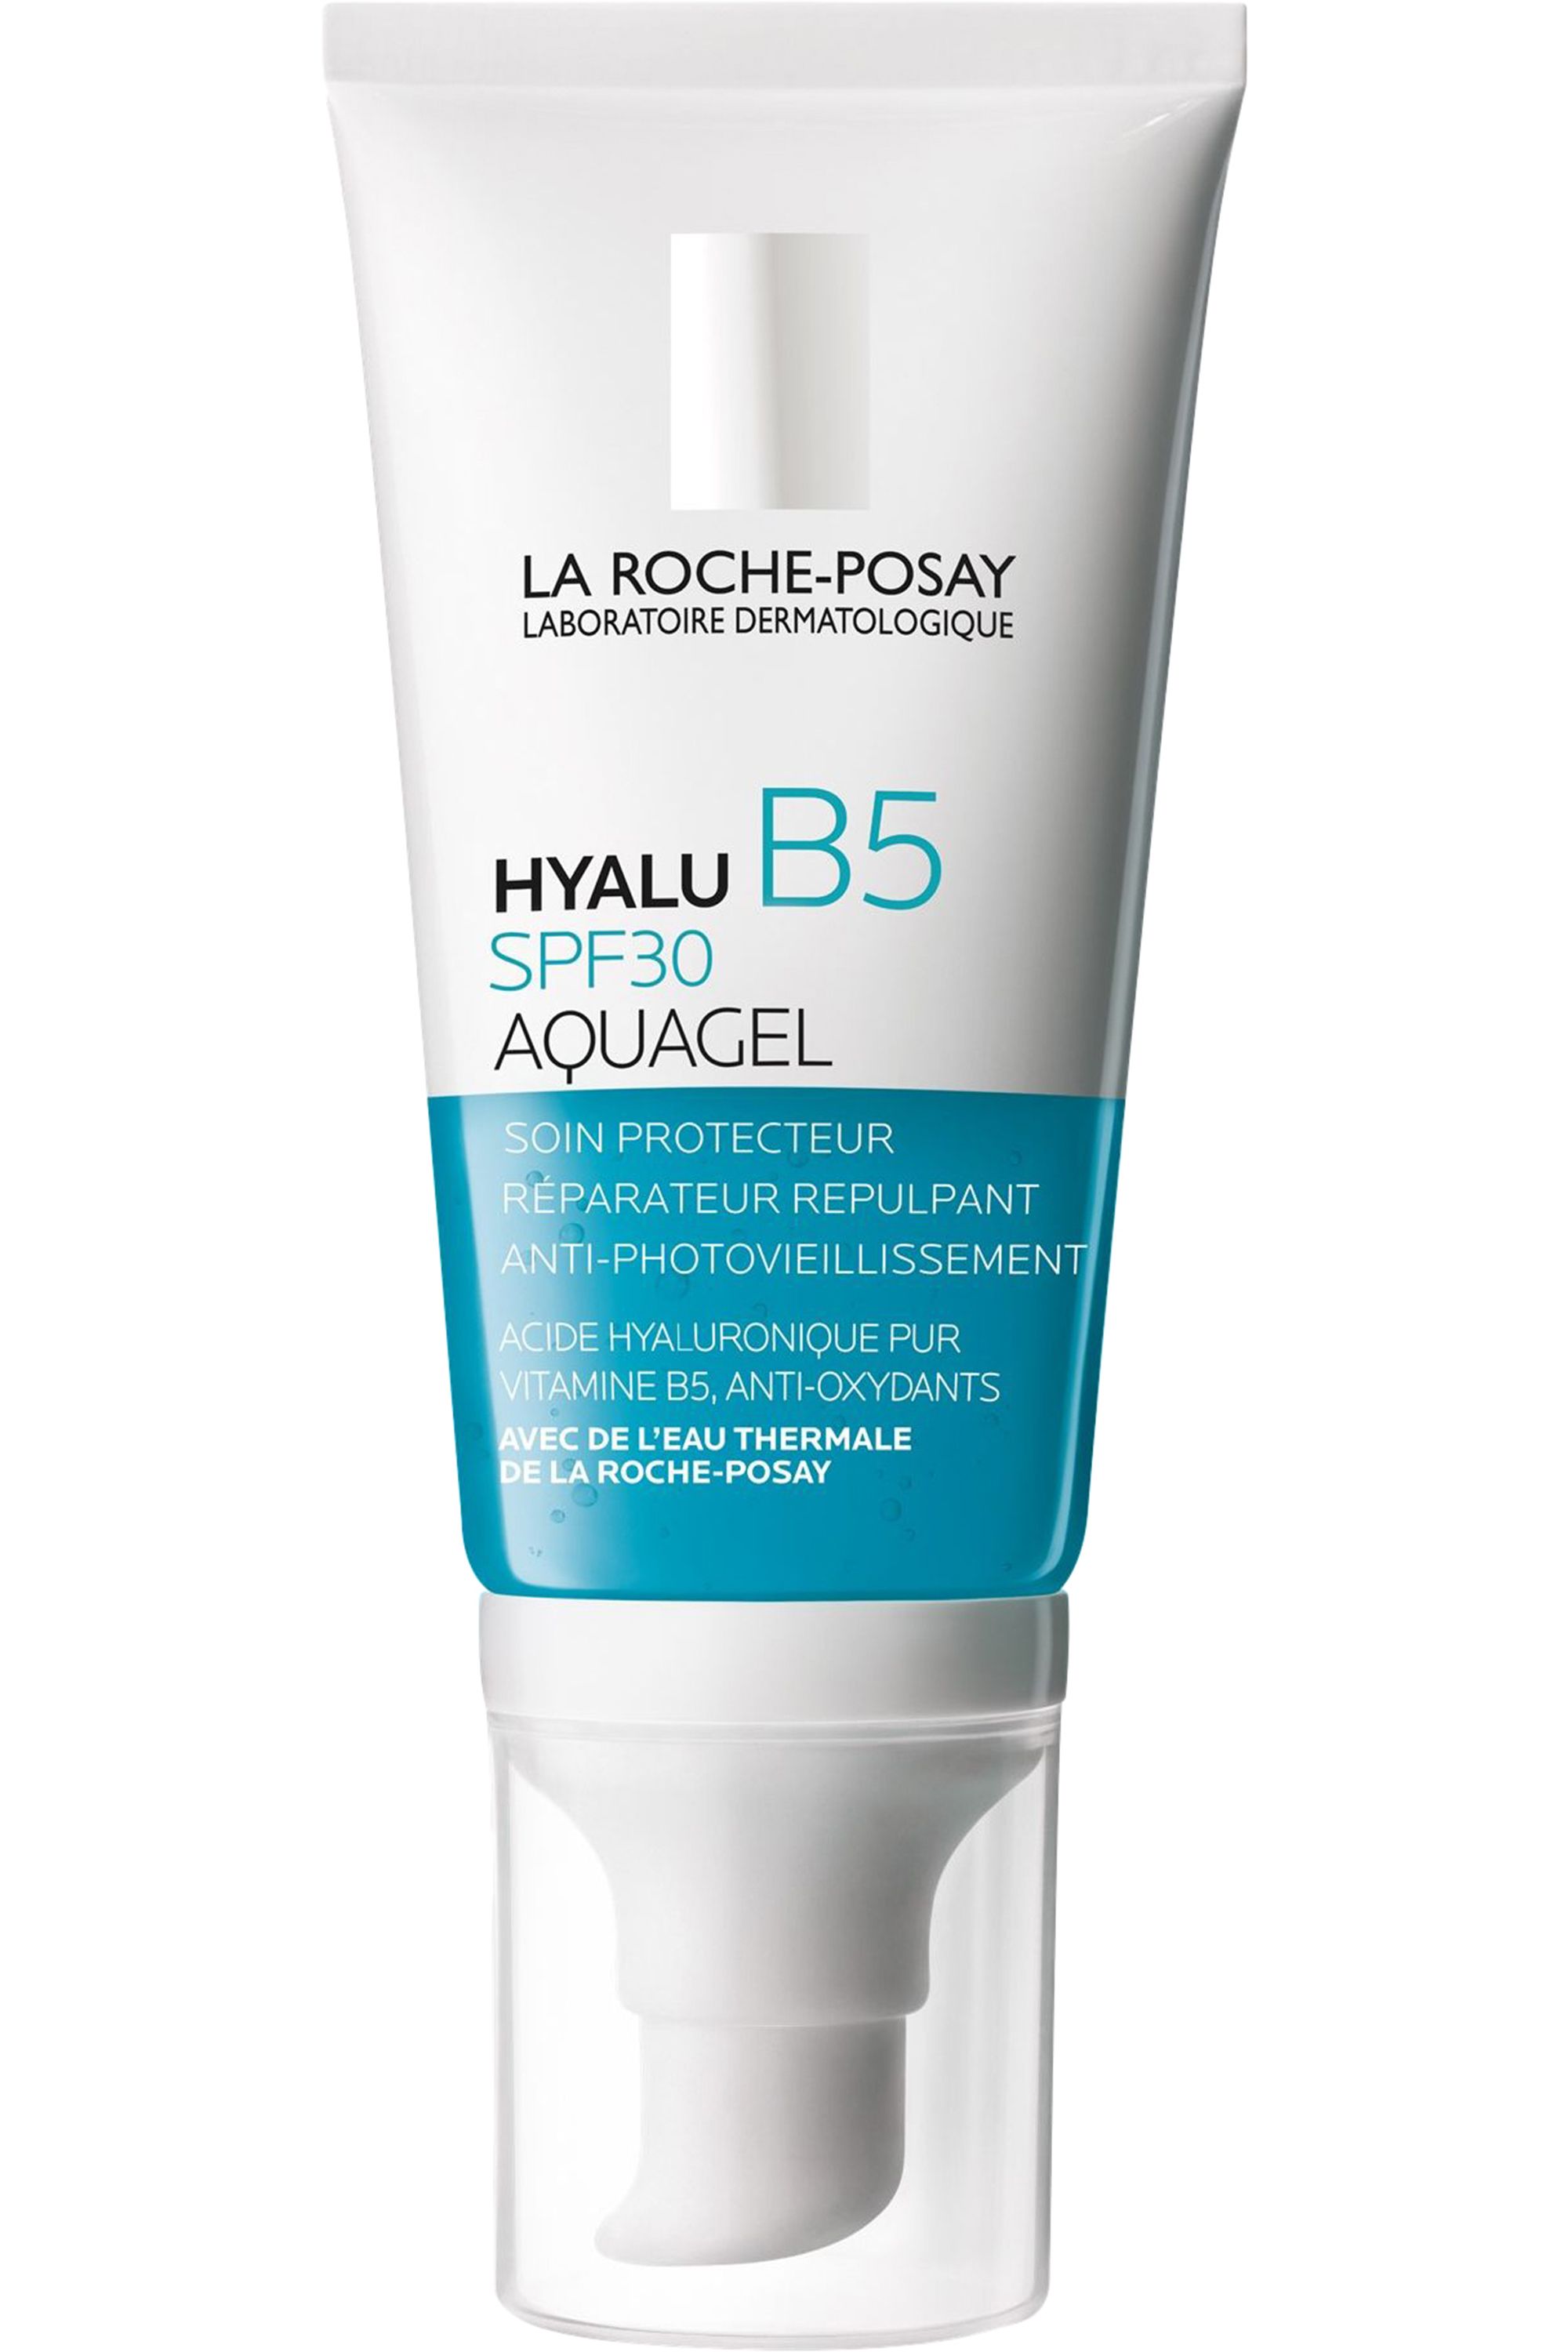 La Roche-Posay - Crème gel SPF30 Aquagel Hyalu B5 - Blissim